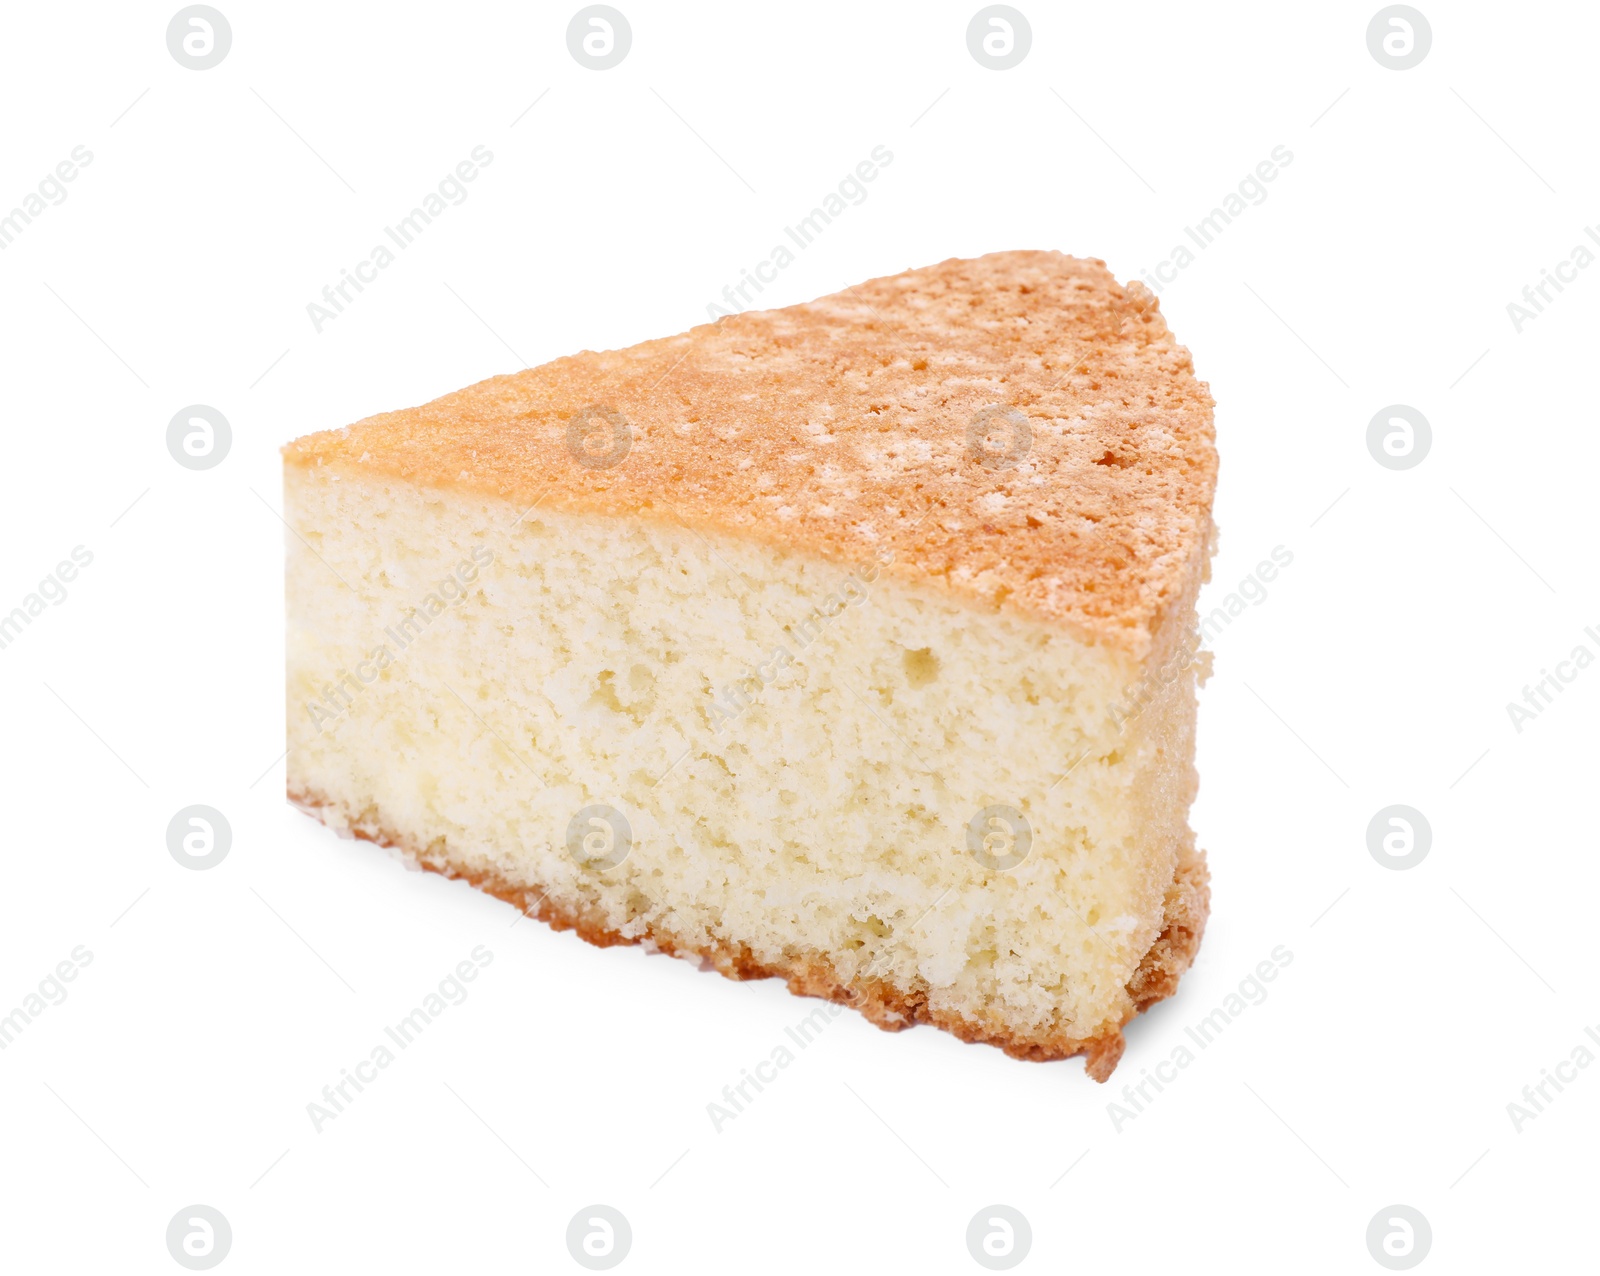 Photo of Piece of tasty sponge cake isolated on white